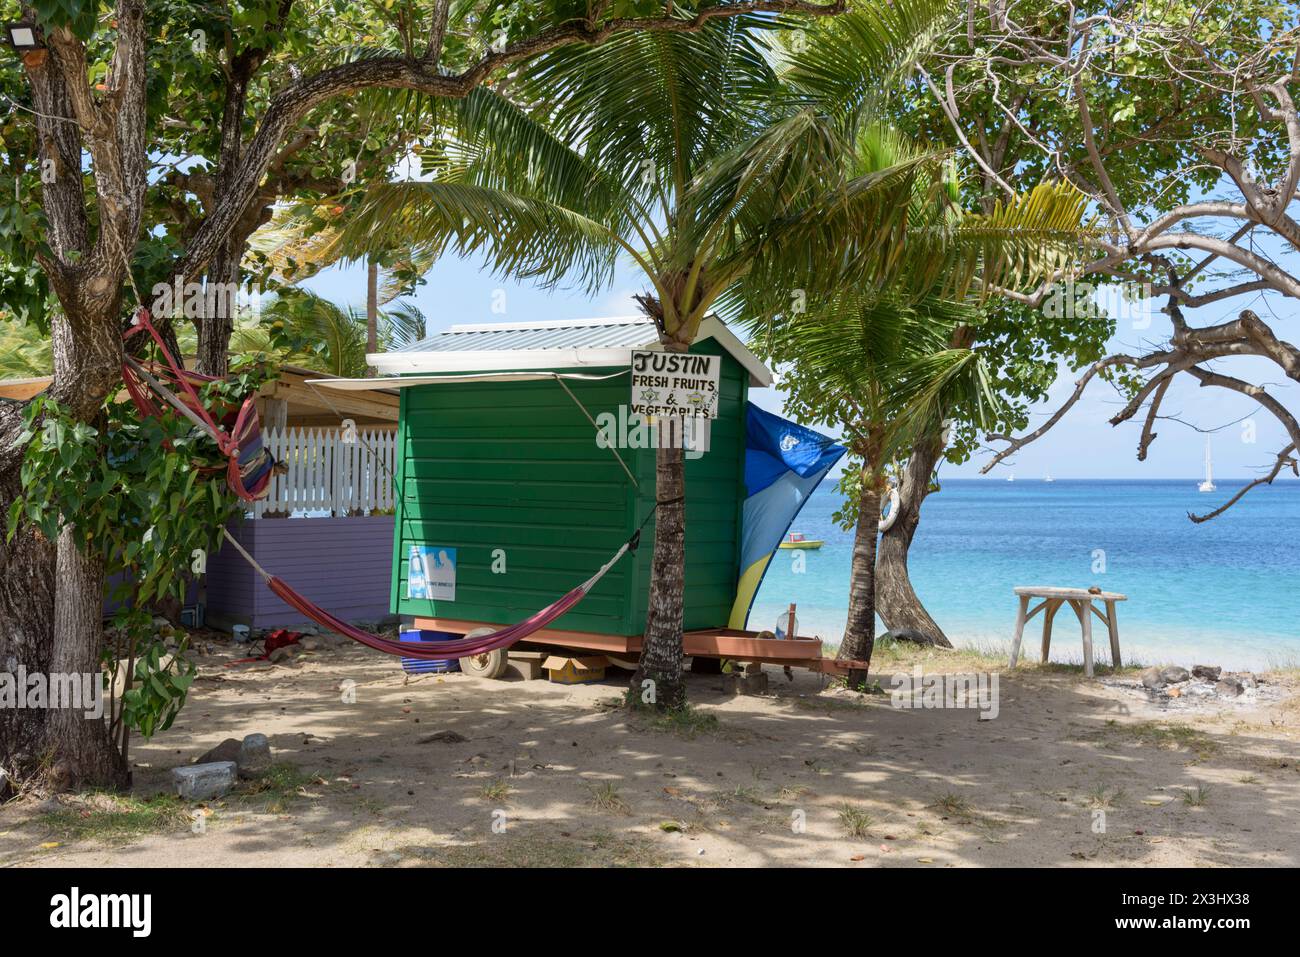 Cabane de plage en bois peint sur la plage de Lower Bay, Lower Bay. Île de Bequia, St Vincent et les Grenadines, Caraïbes Banque D'Images